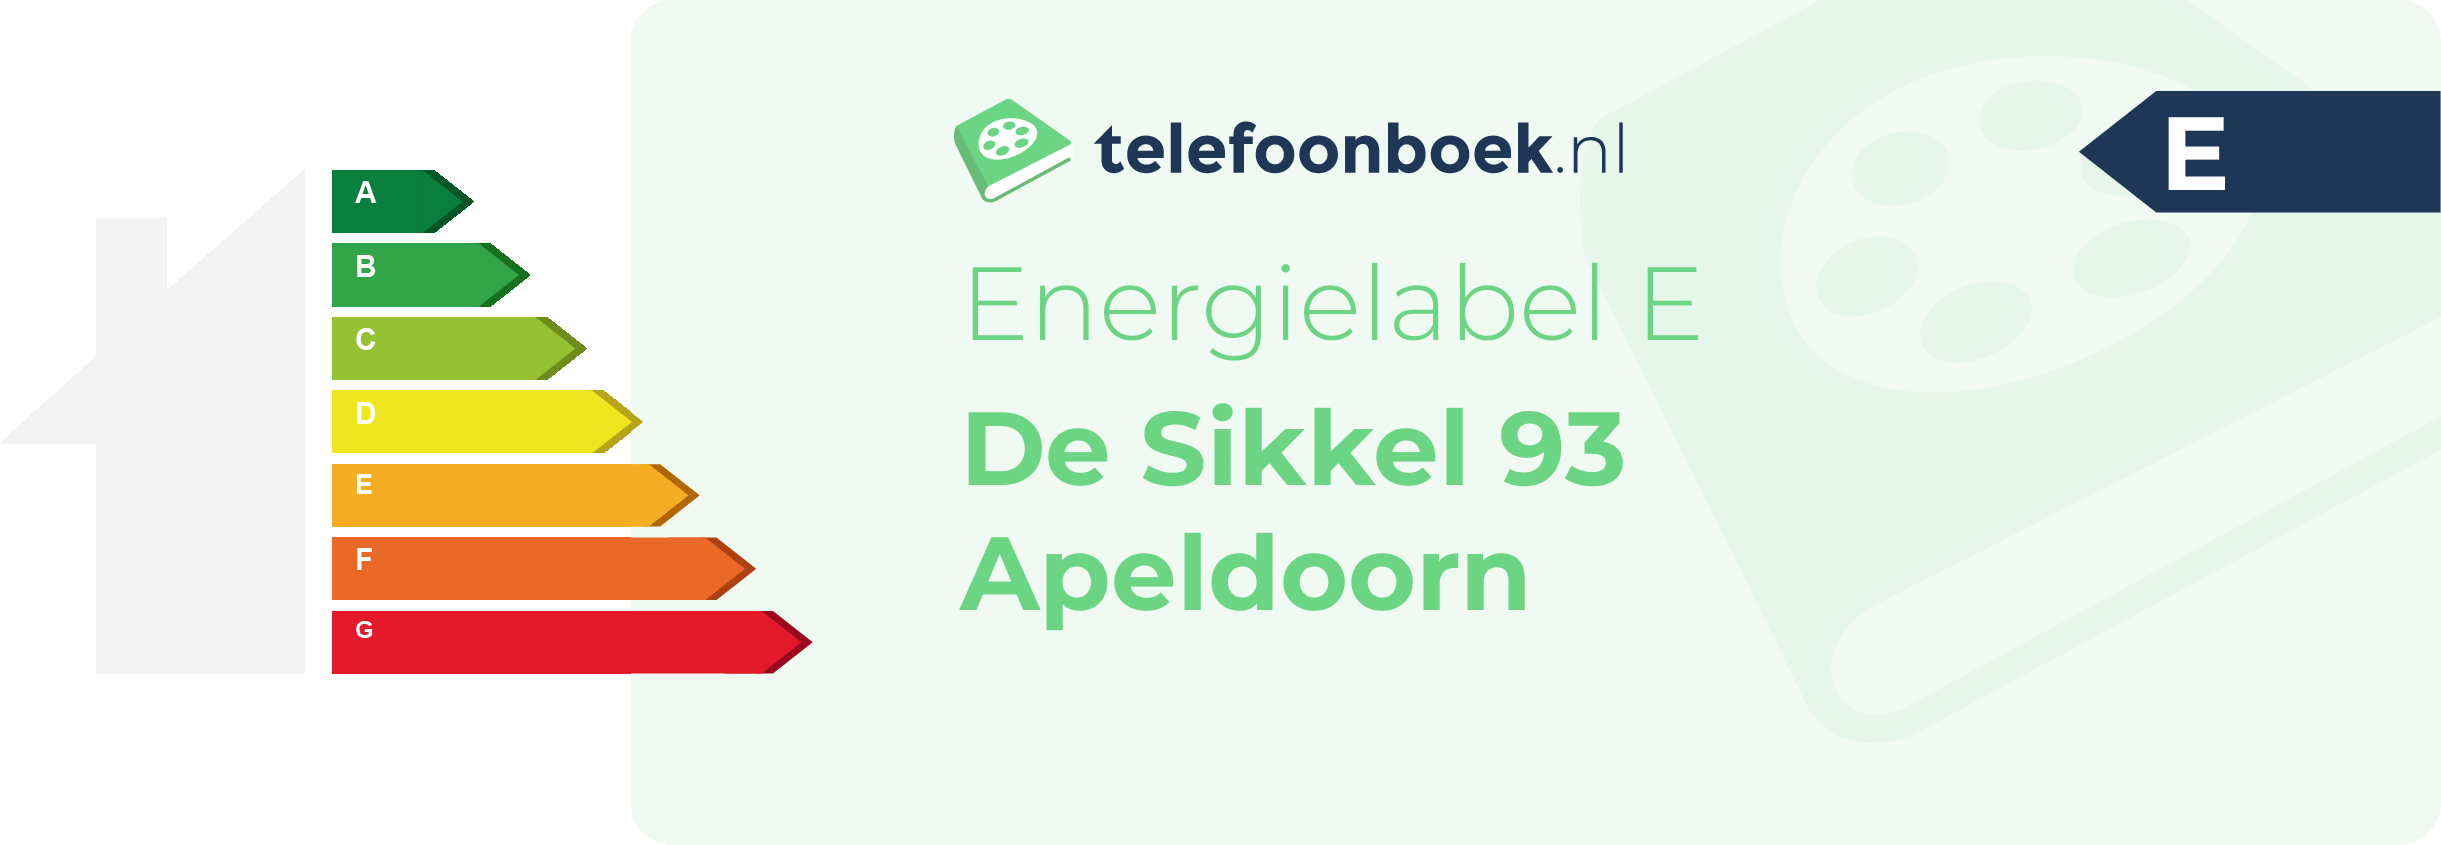 Energielabel De Sikkel 93 Apeldoorn